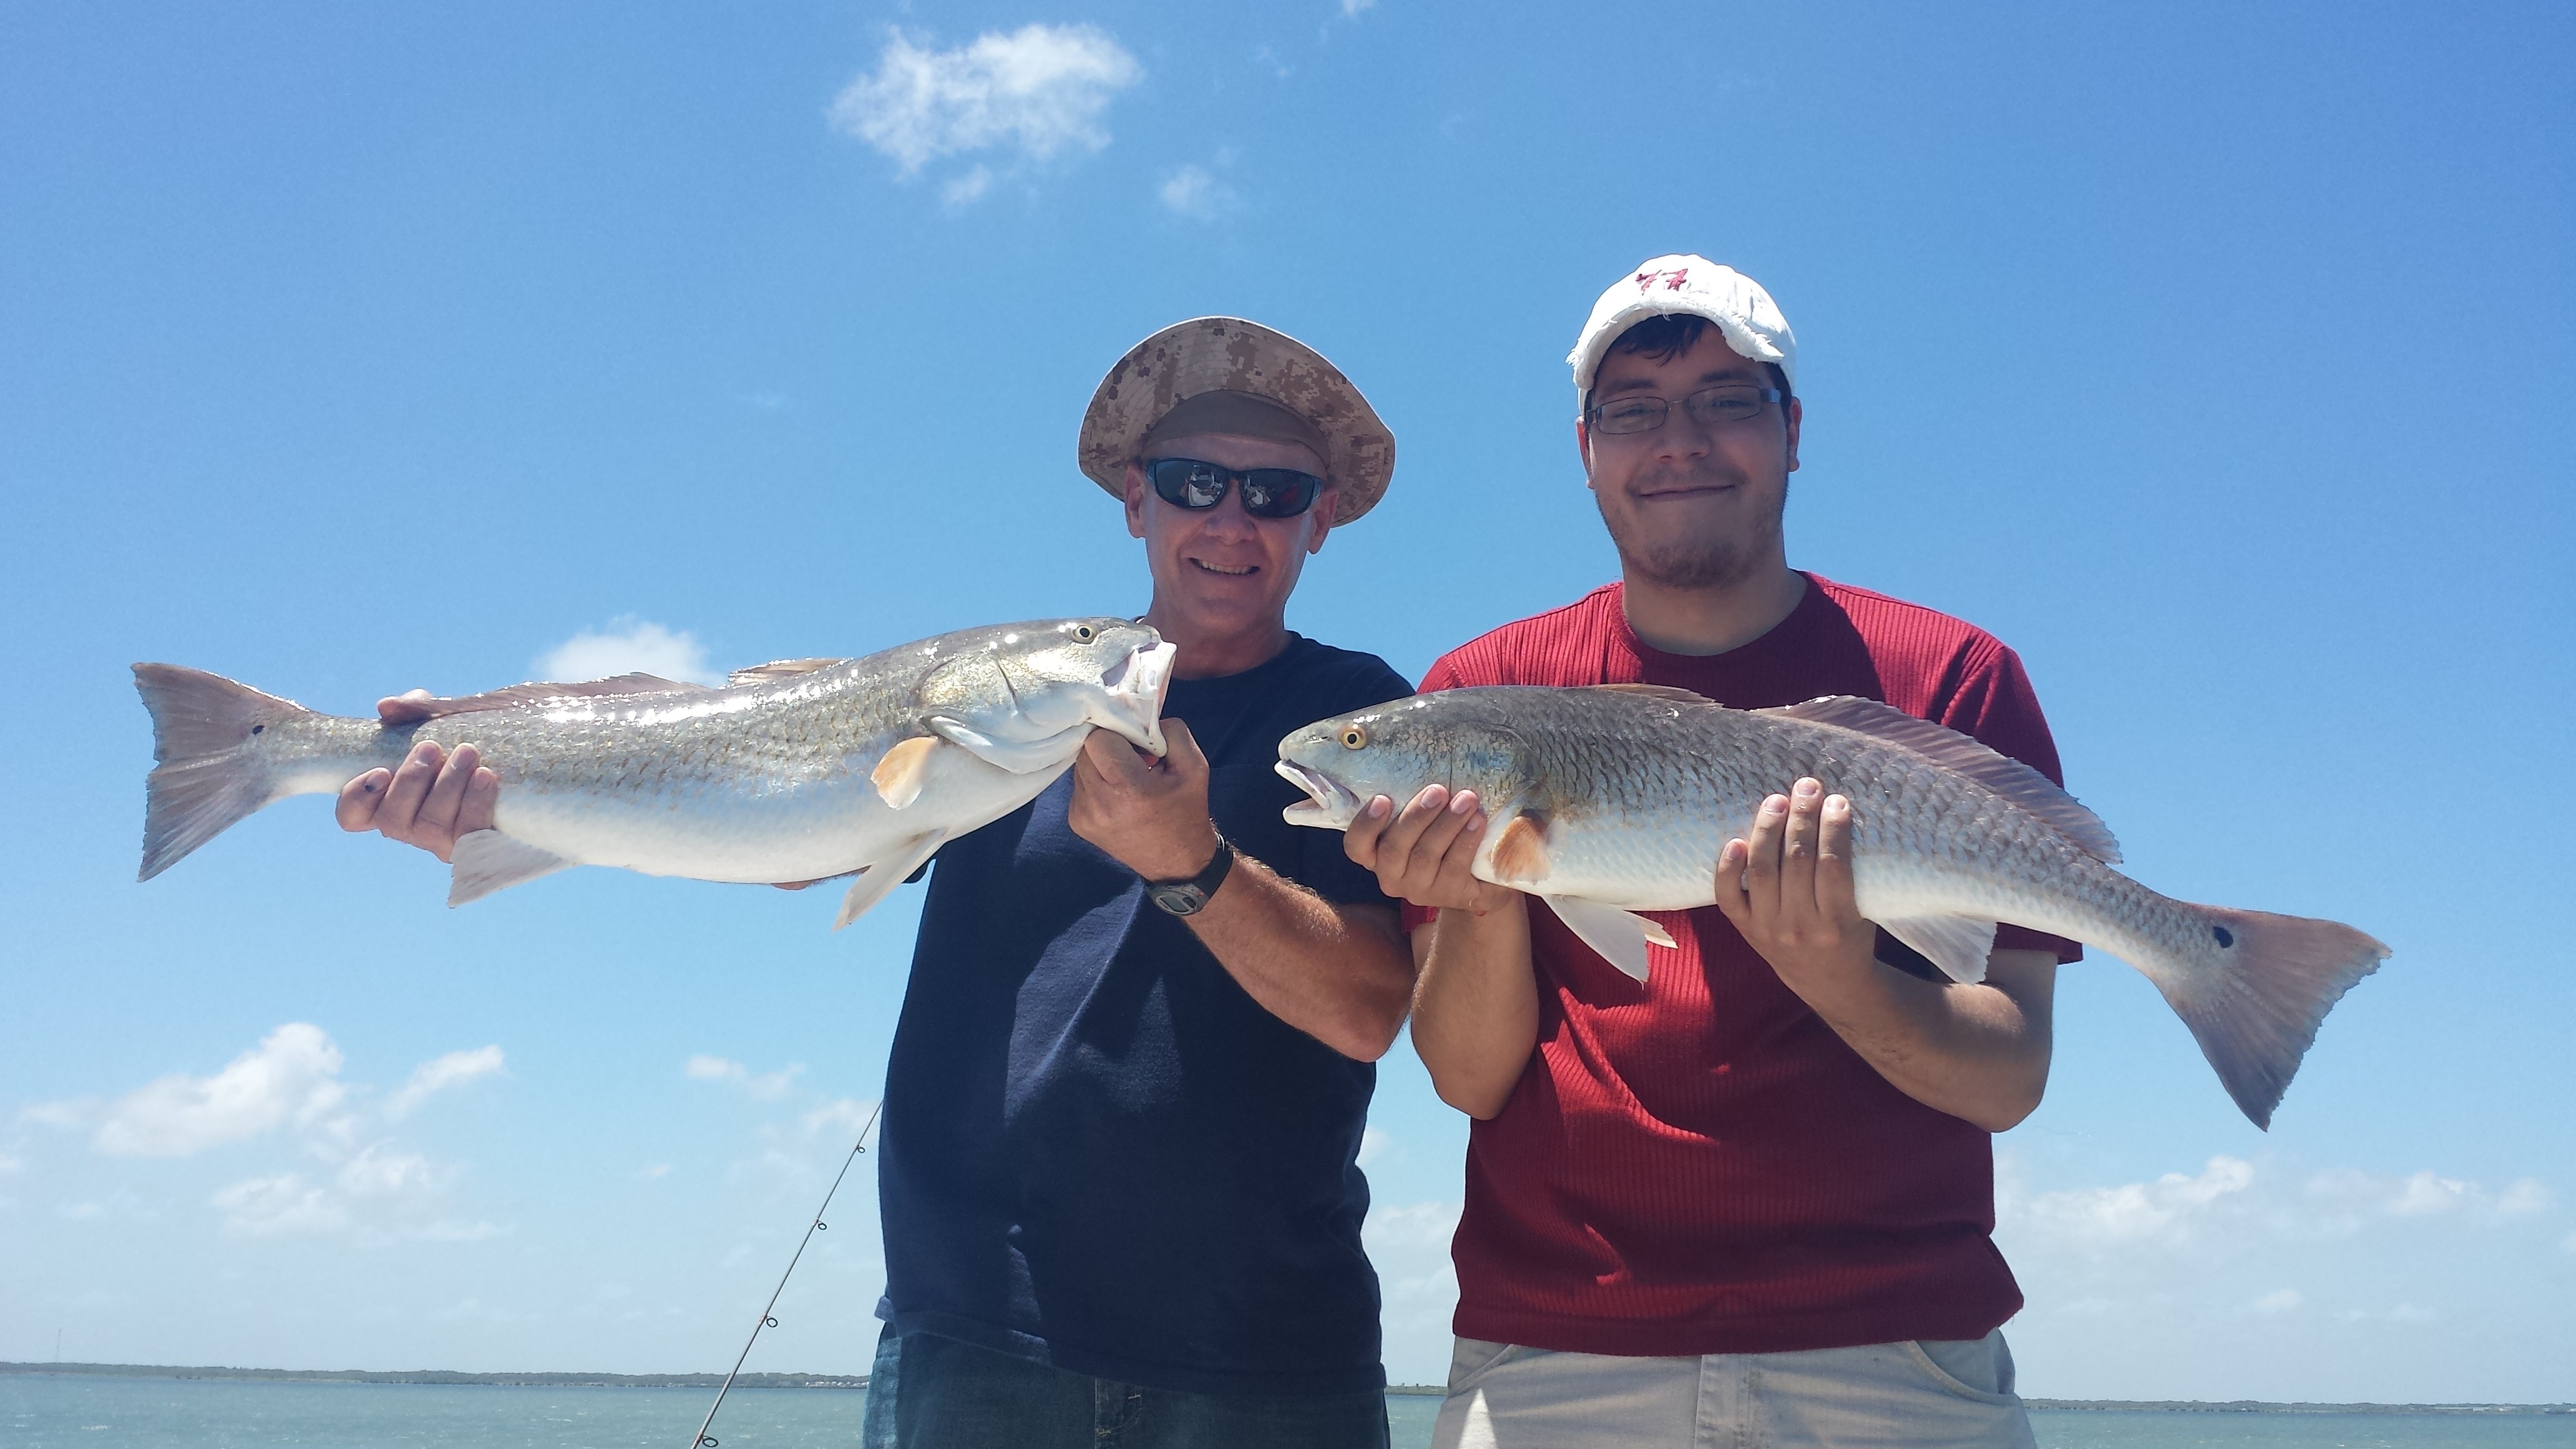 Capt. Scott Mccune: Full Day Bay Fishing Trip Full Day